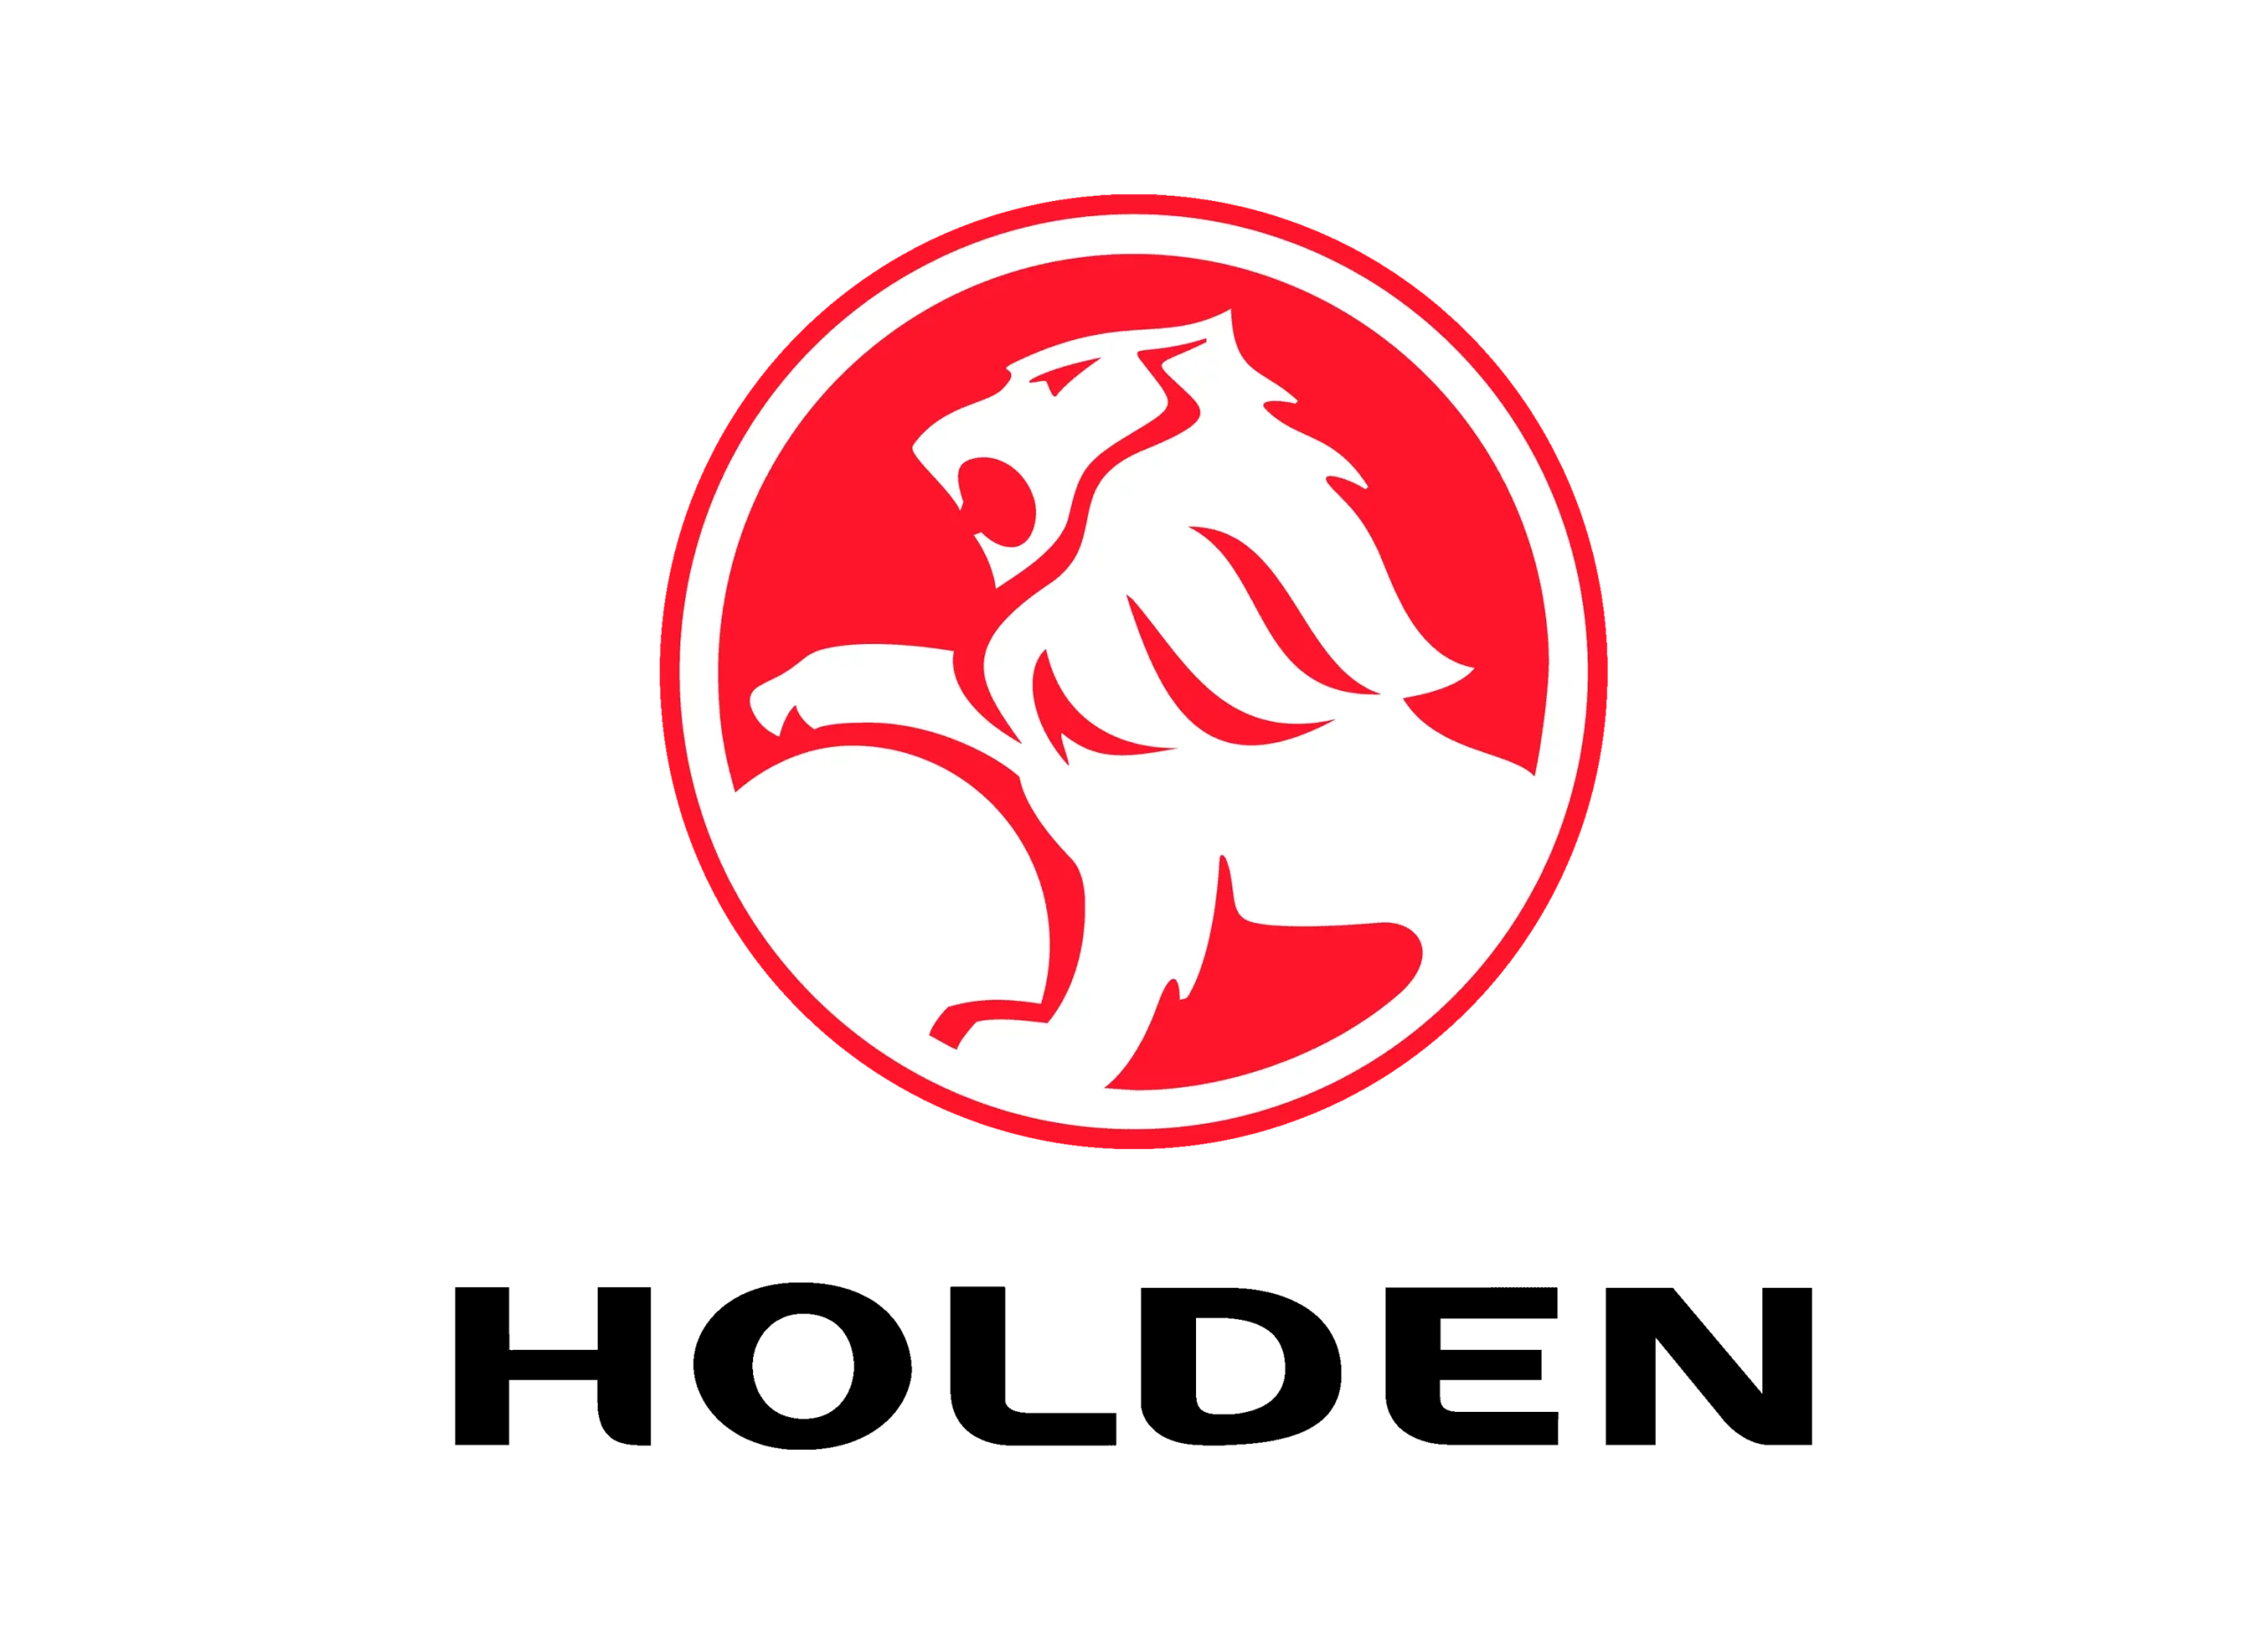 Holden logo 1994-2014